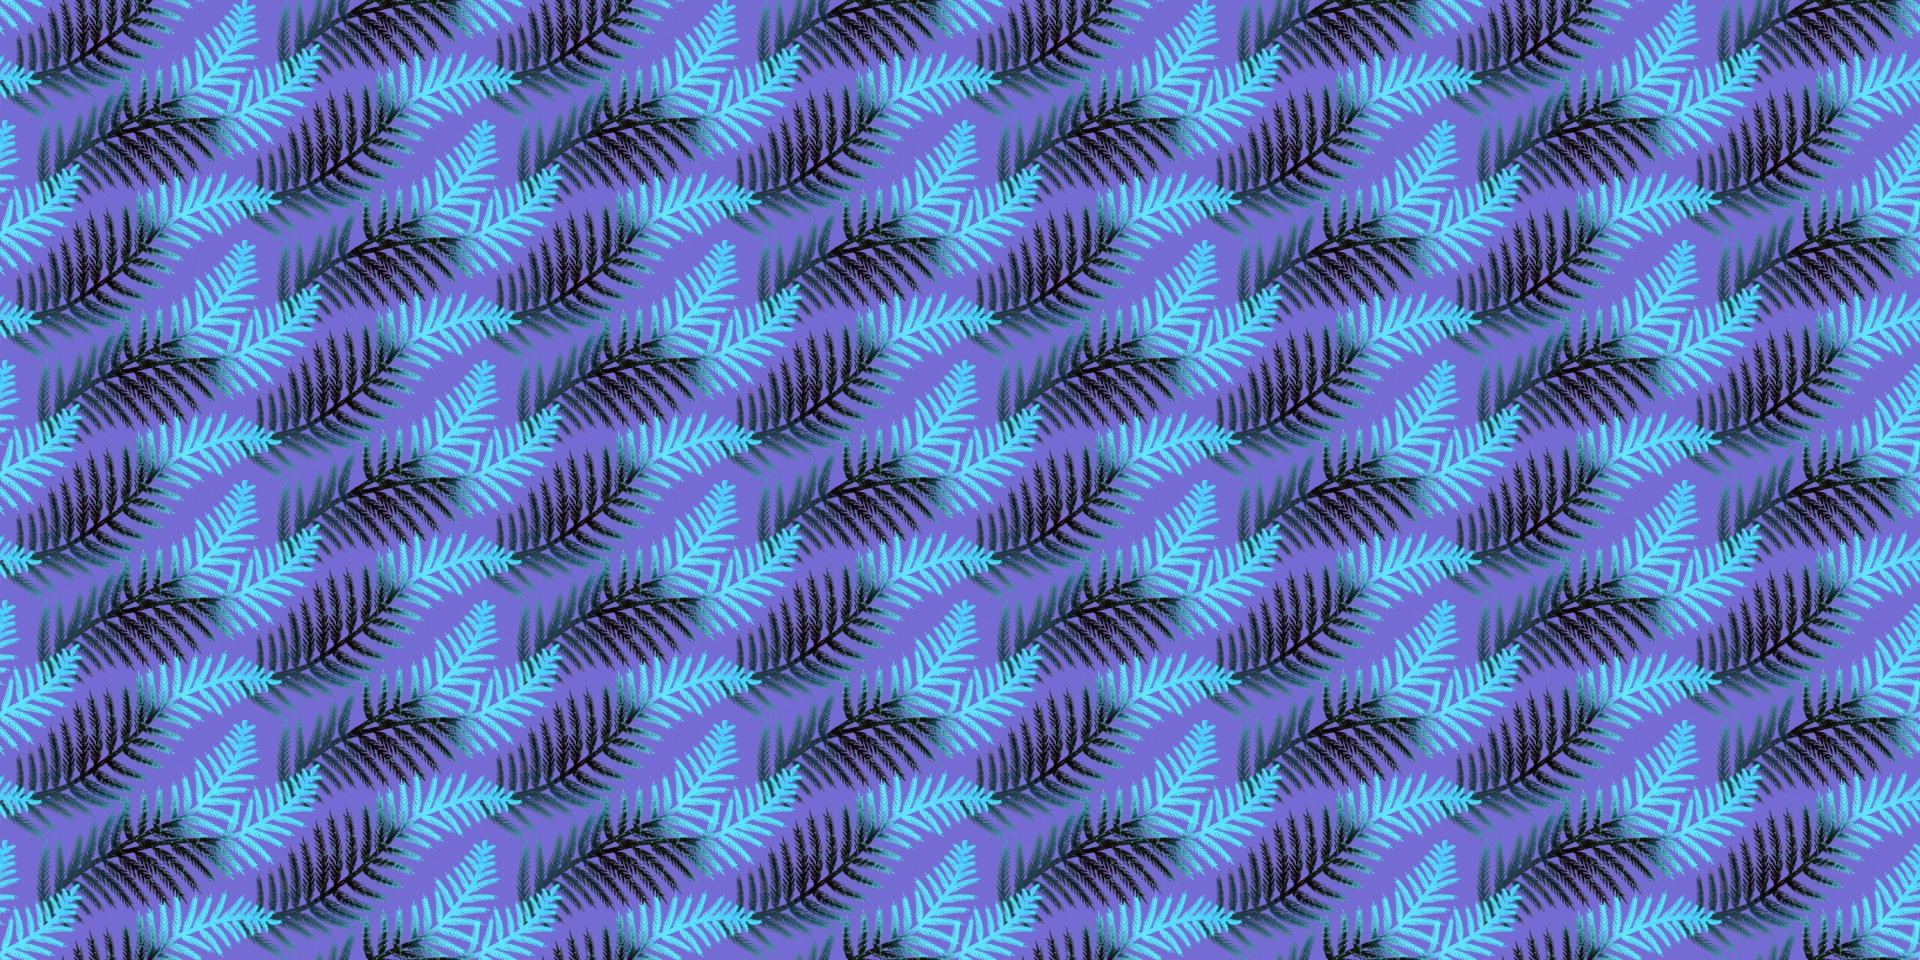 Leafy Pattern 3